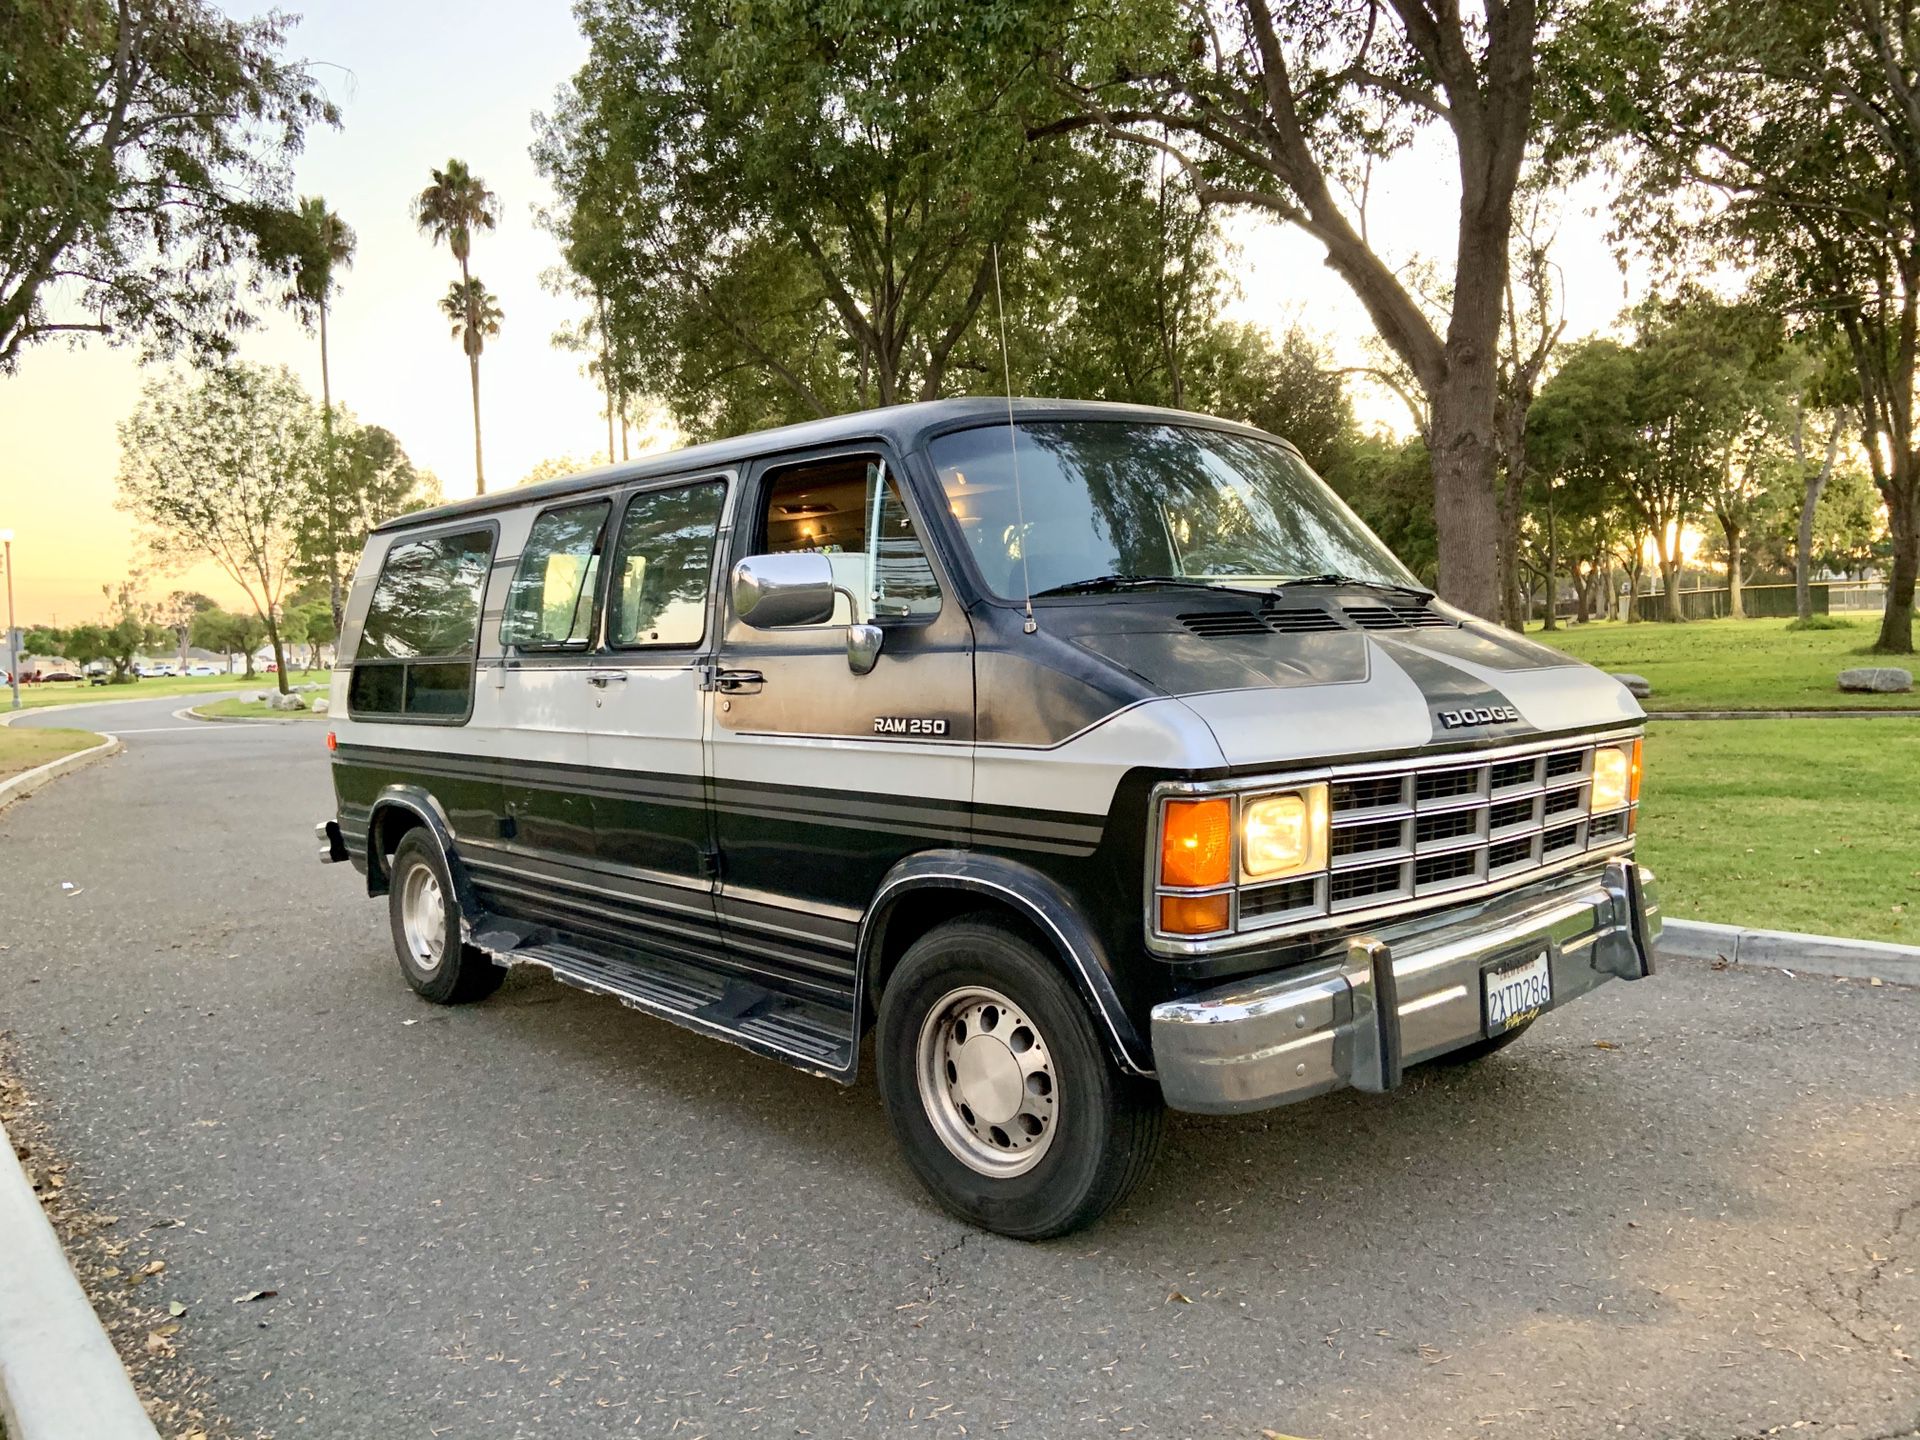 Classic Dodge Camper / Conversion Van